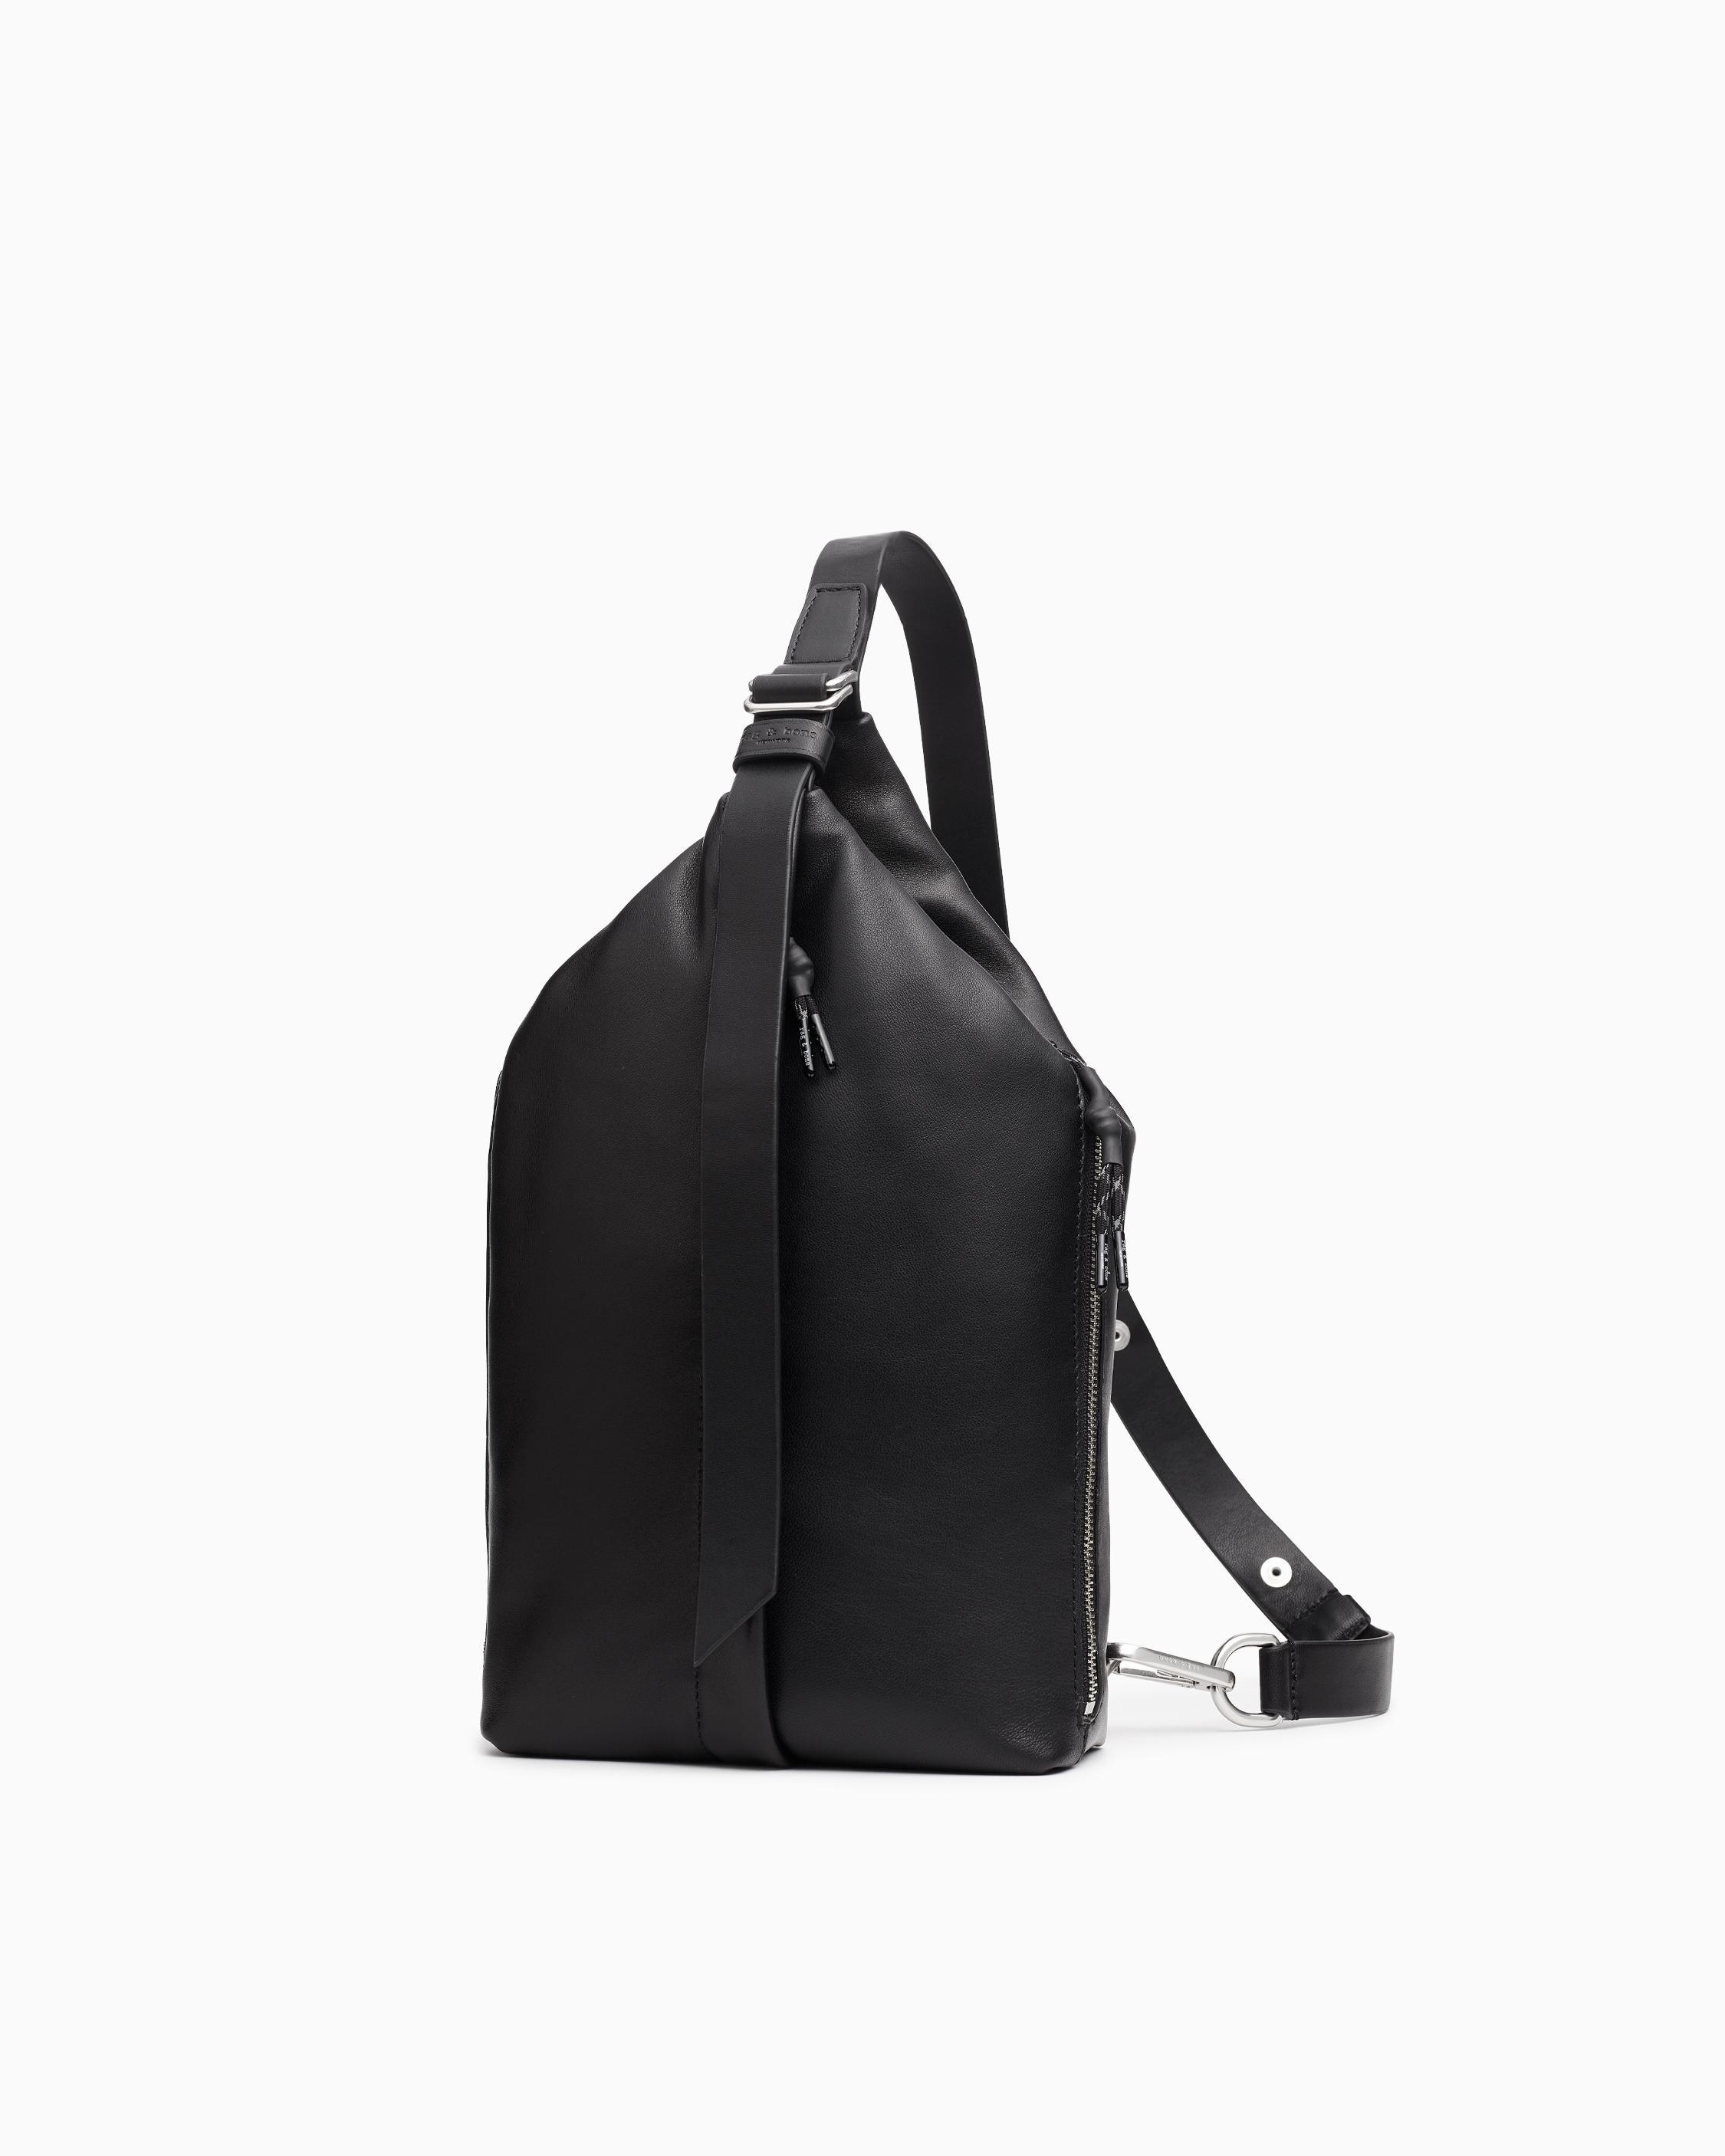 Cross body Sling Bag, Black, Large